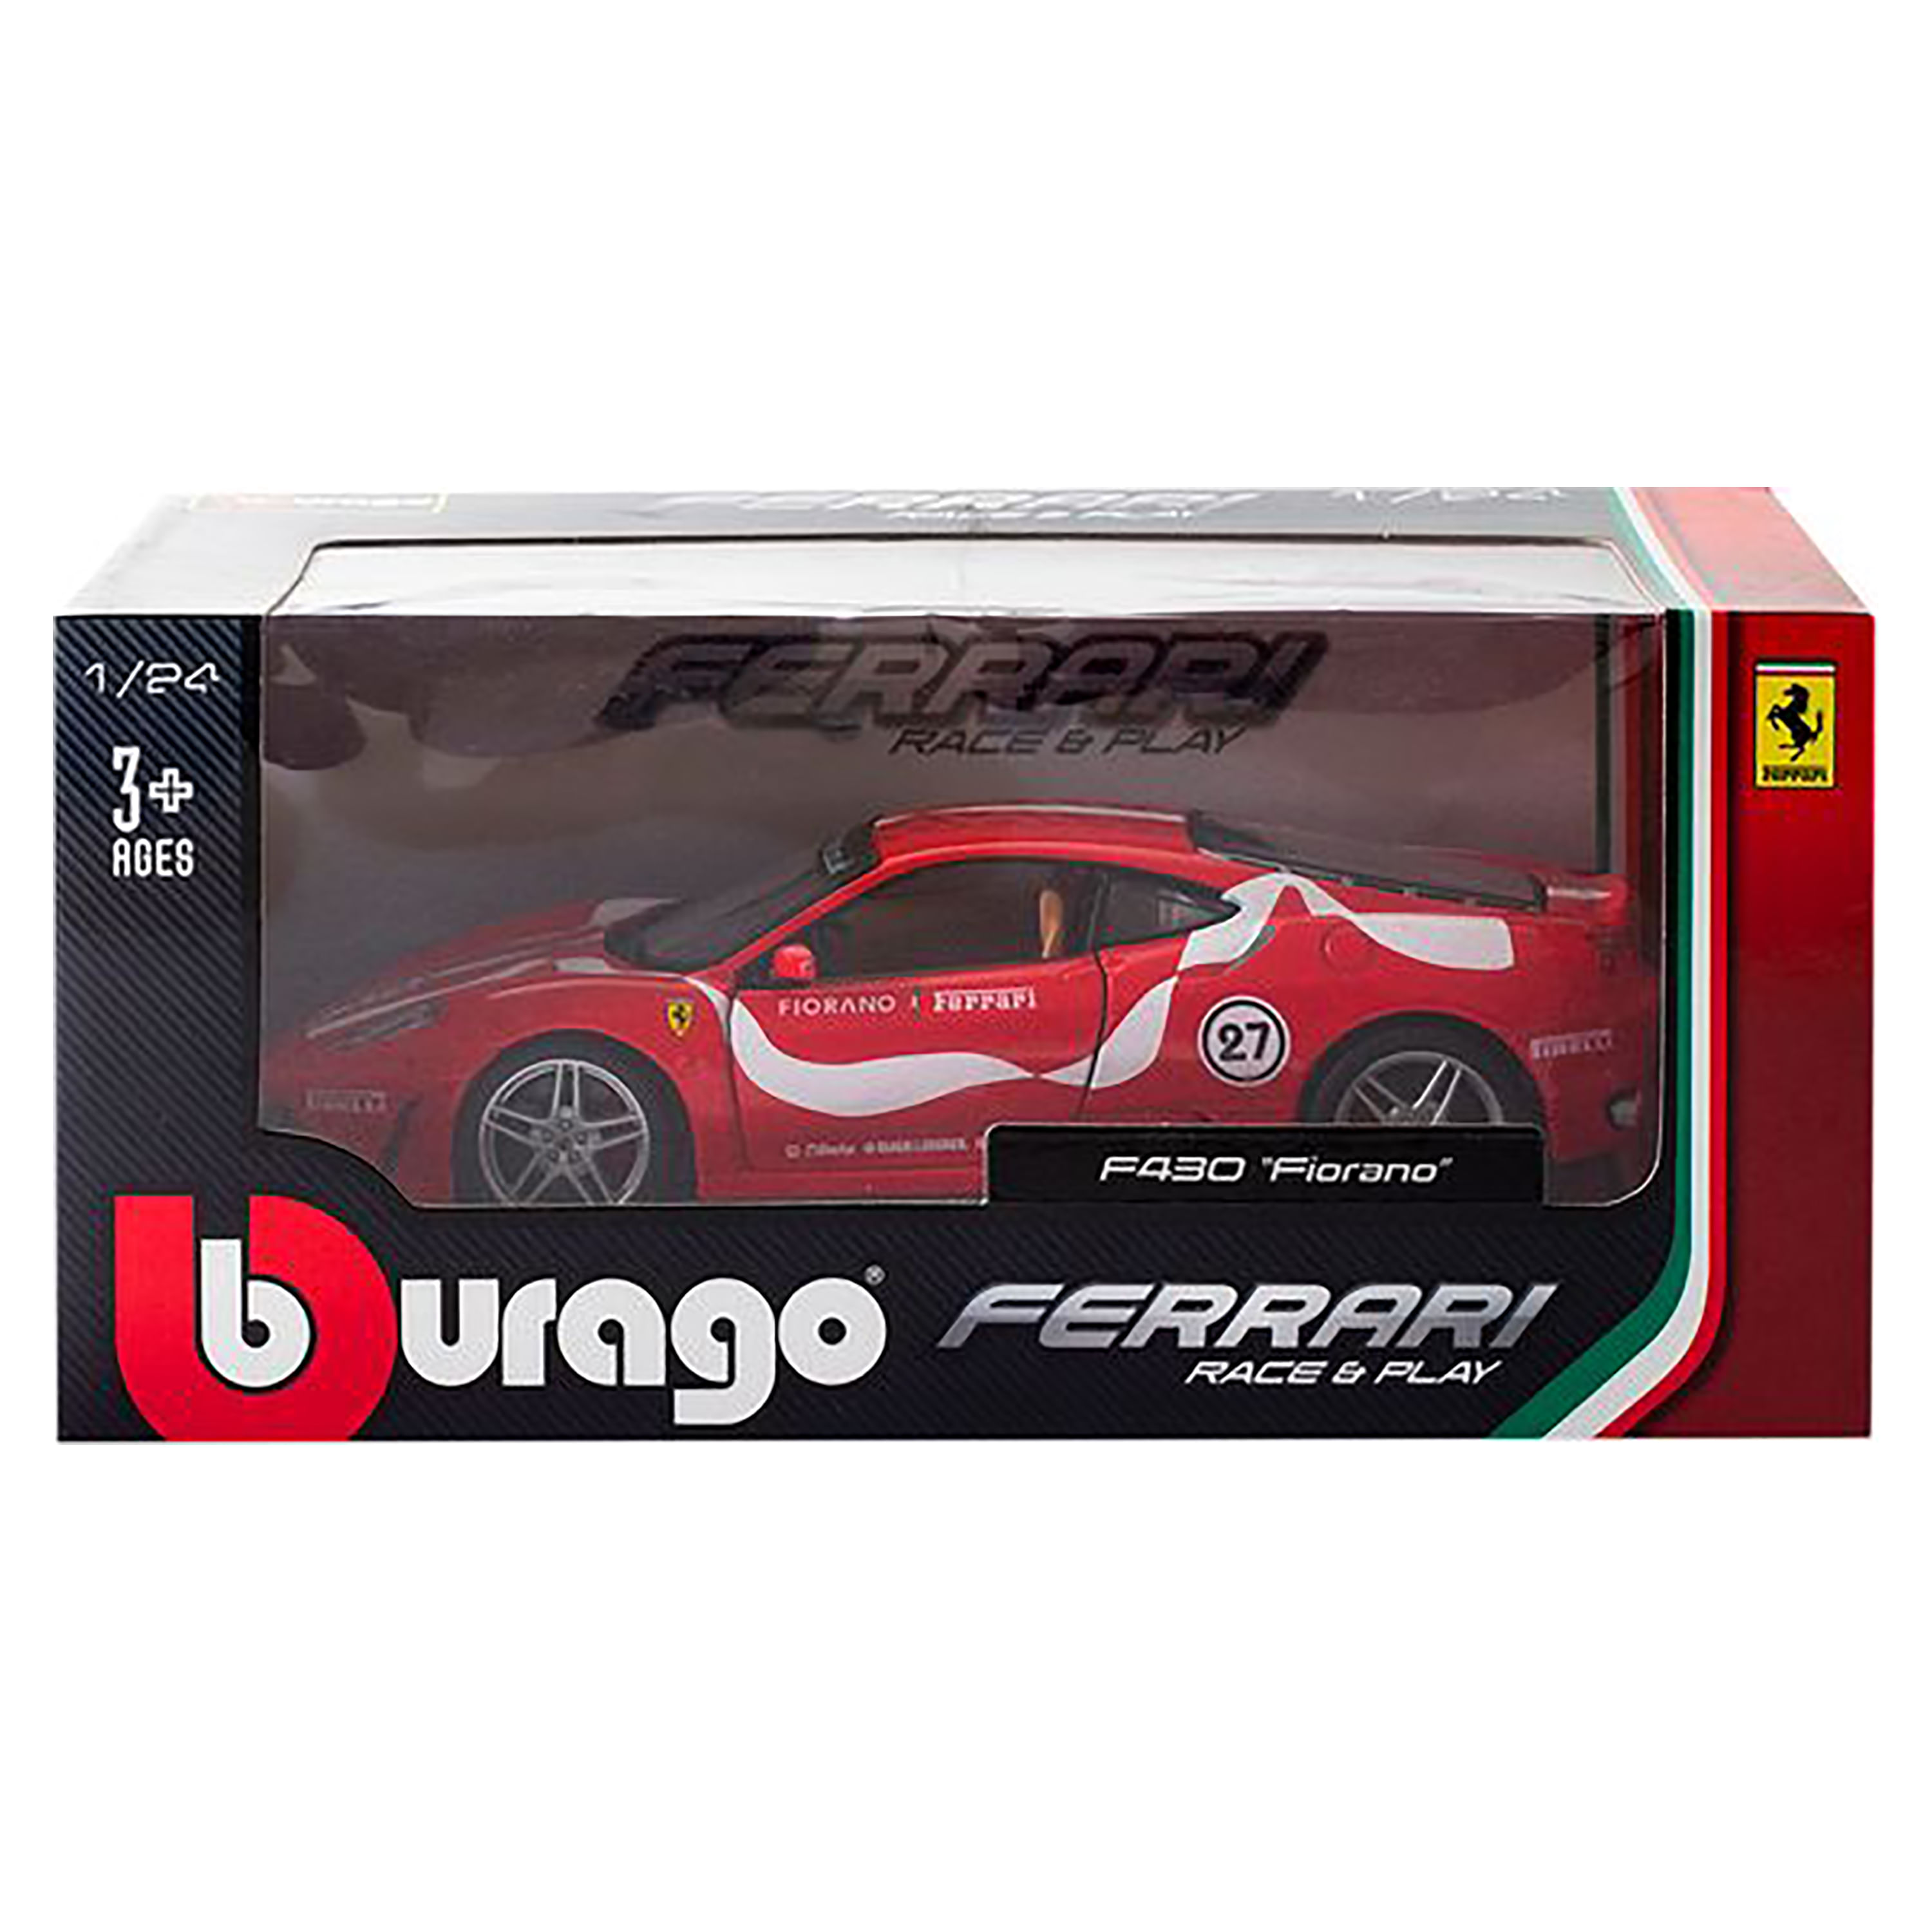 Burago-Vehiculo-Colecc-1-68703